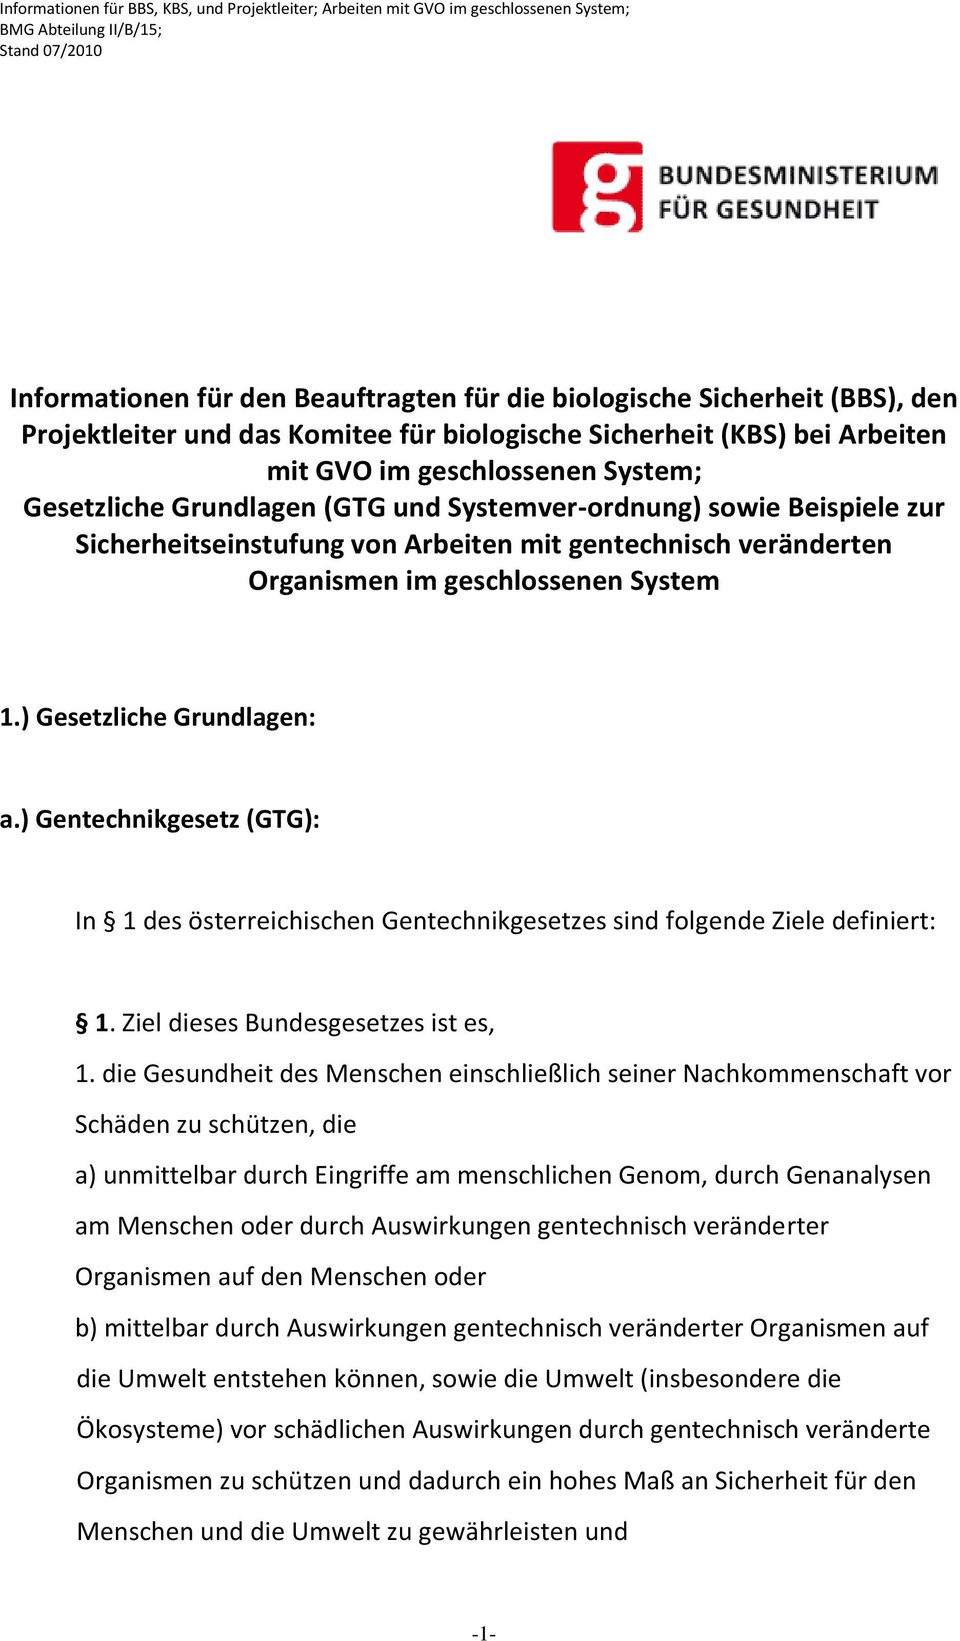 ) Gentechnikgesetz (GTG): In 1 des österreichischen Gentechnikgesetzes sind folgende Ziele definiert: 1. Ziel dieses Bundesgesetzes ist es, 1.